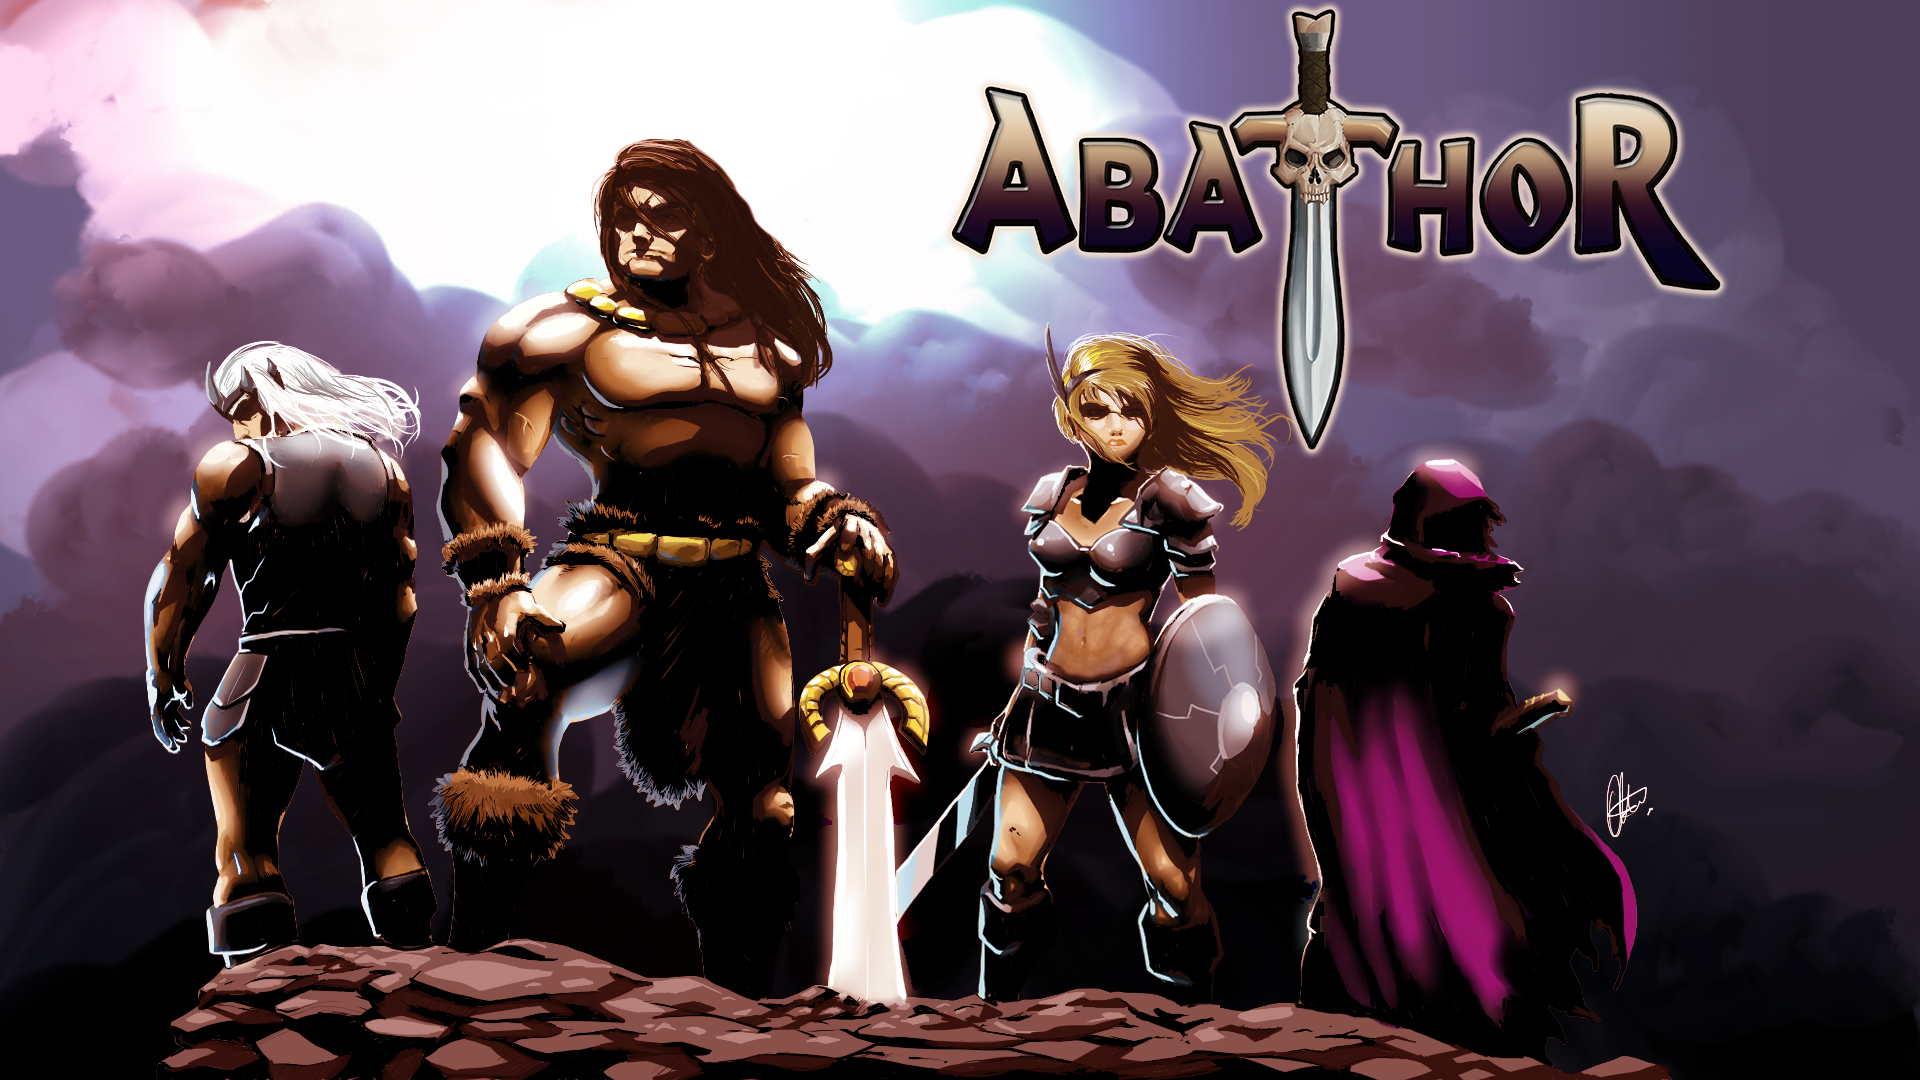 Abathor is 4 Player 2D Pixelart Platformer Coop